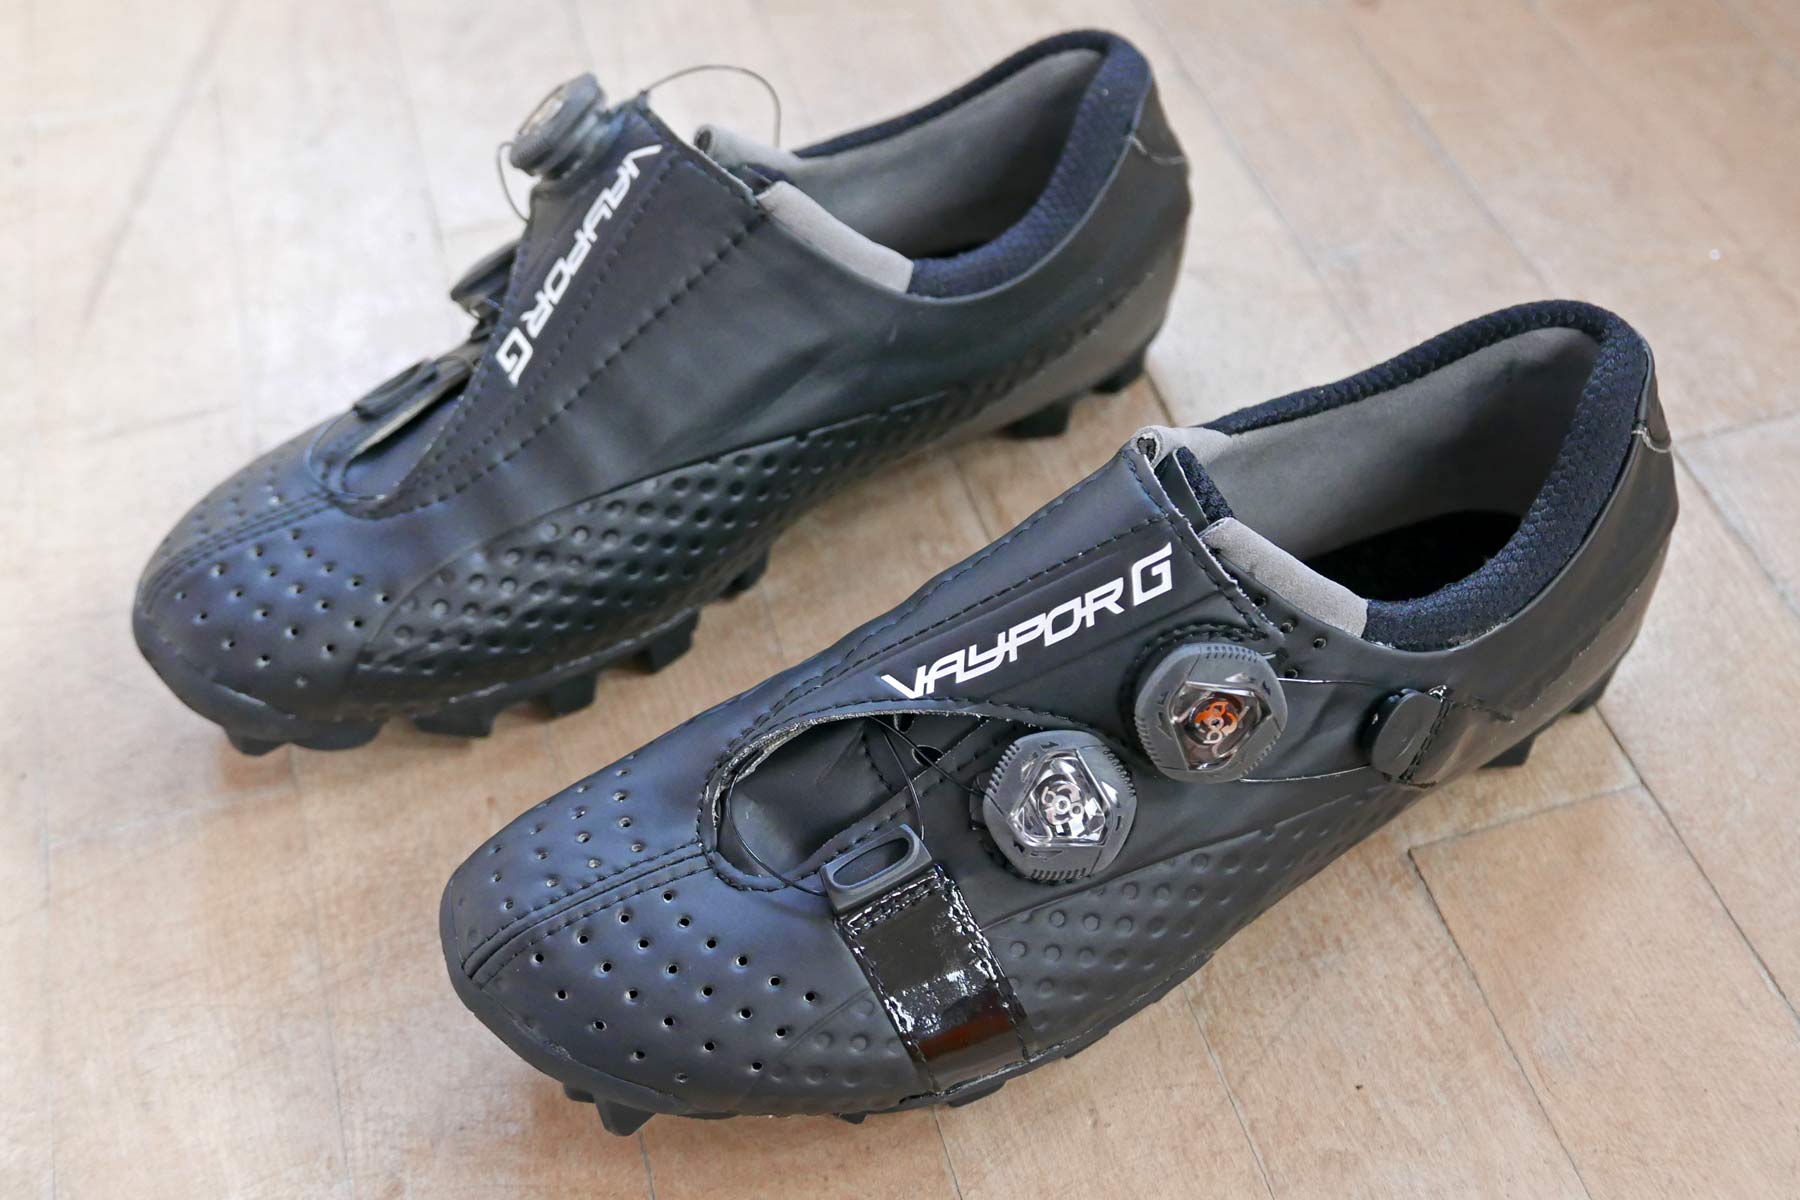 Bont Vaypor G ultra stiff, full carbon gravel road bike performance gravel bike shoes